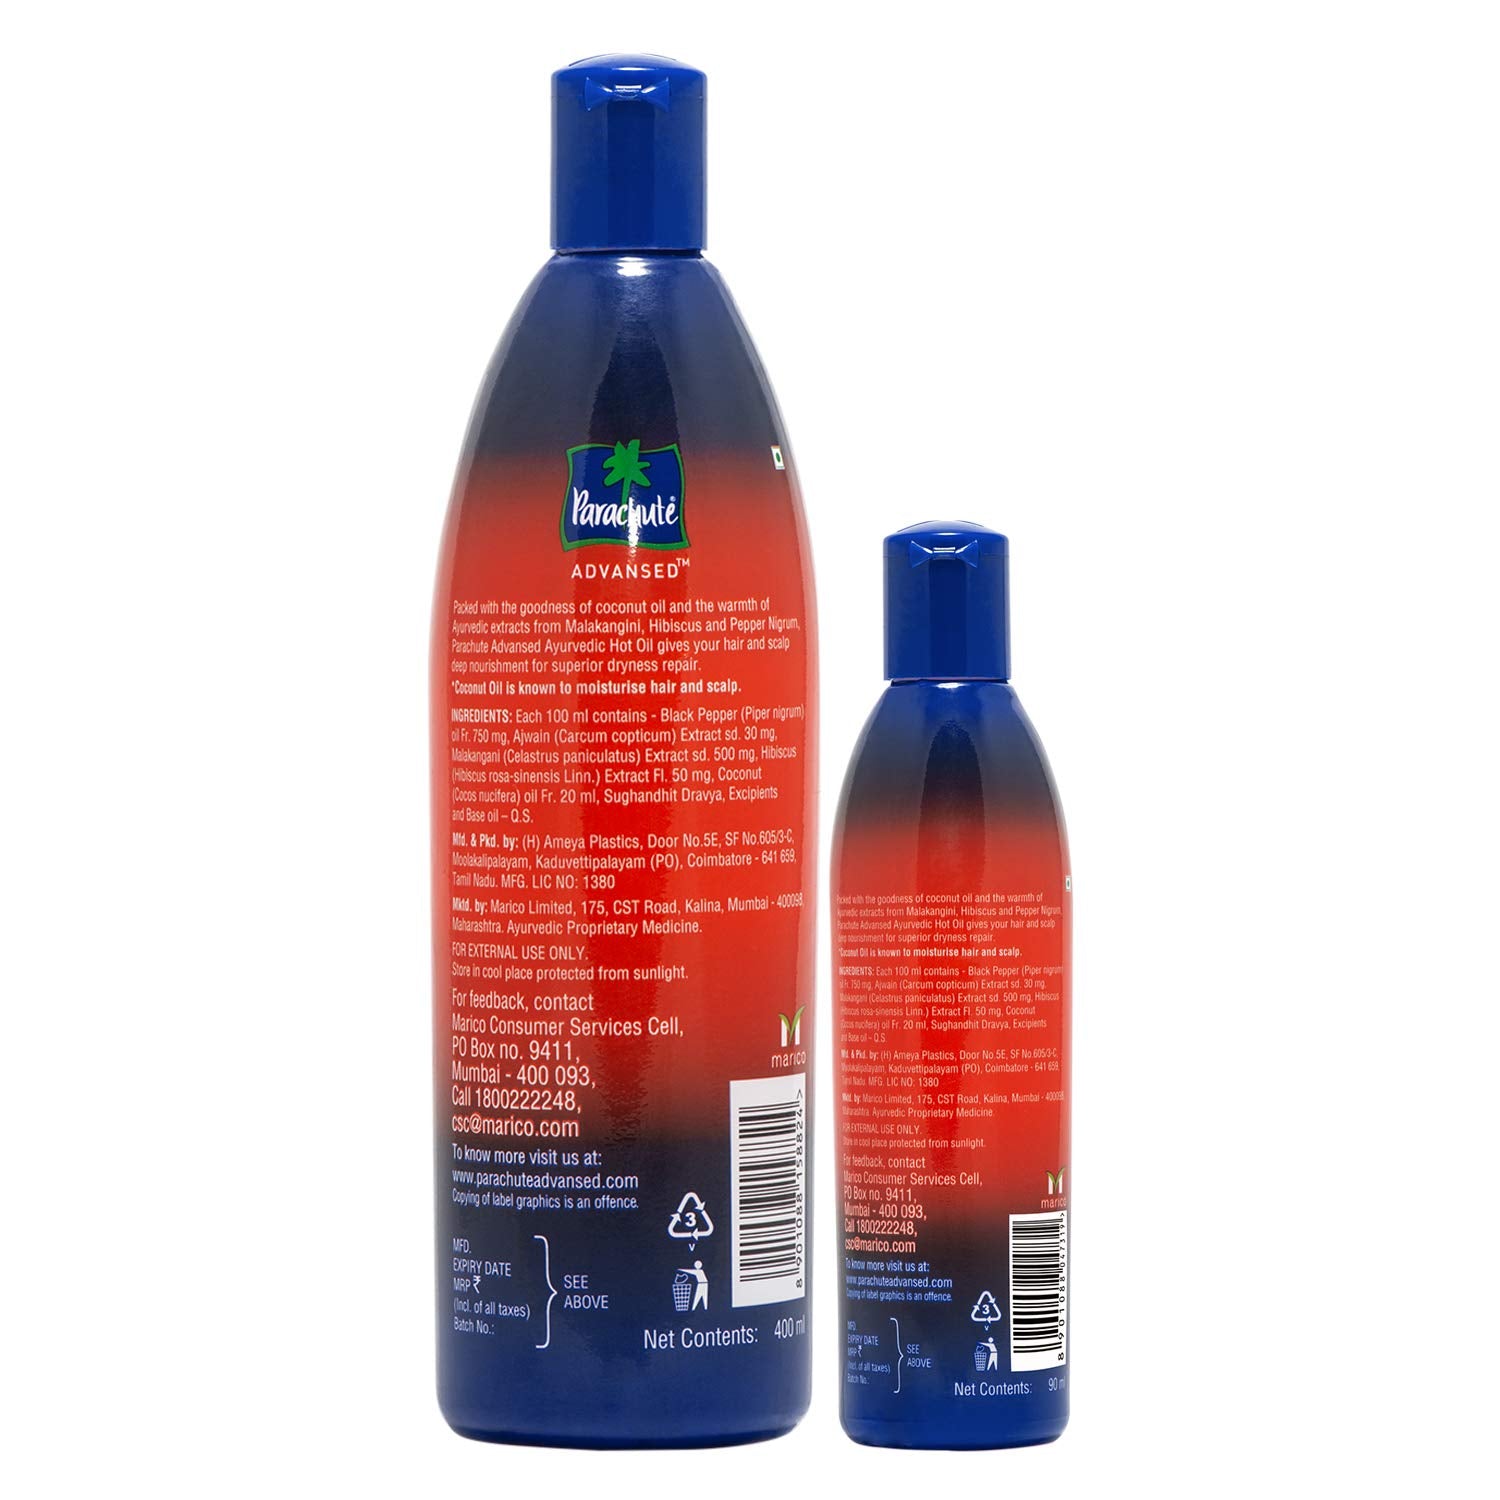 Parachute Advanced Ayurvedic Hot Coconut Hair Oil - (400ml + 90ml)